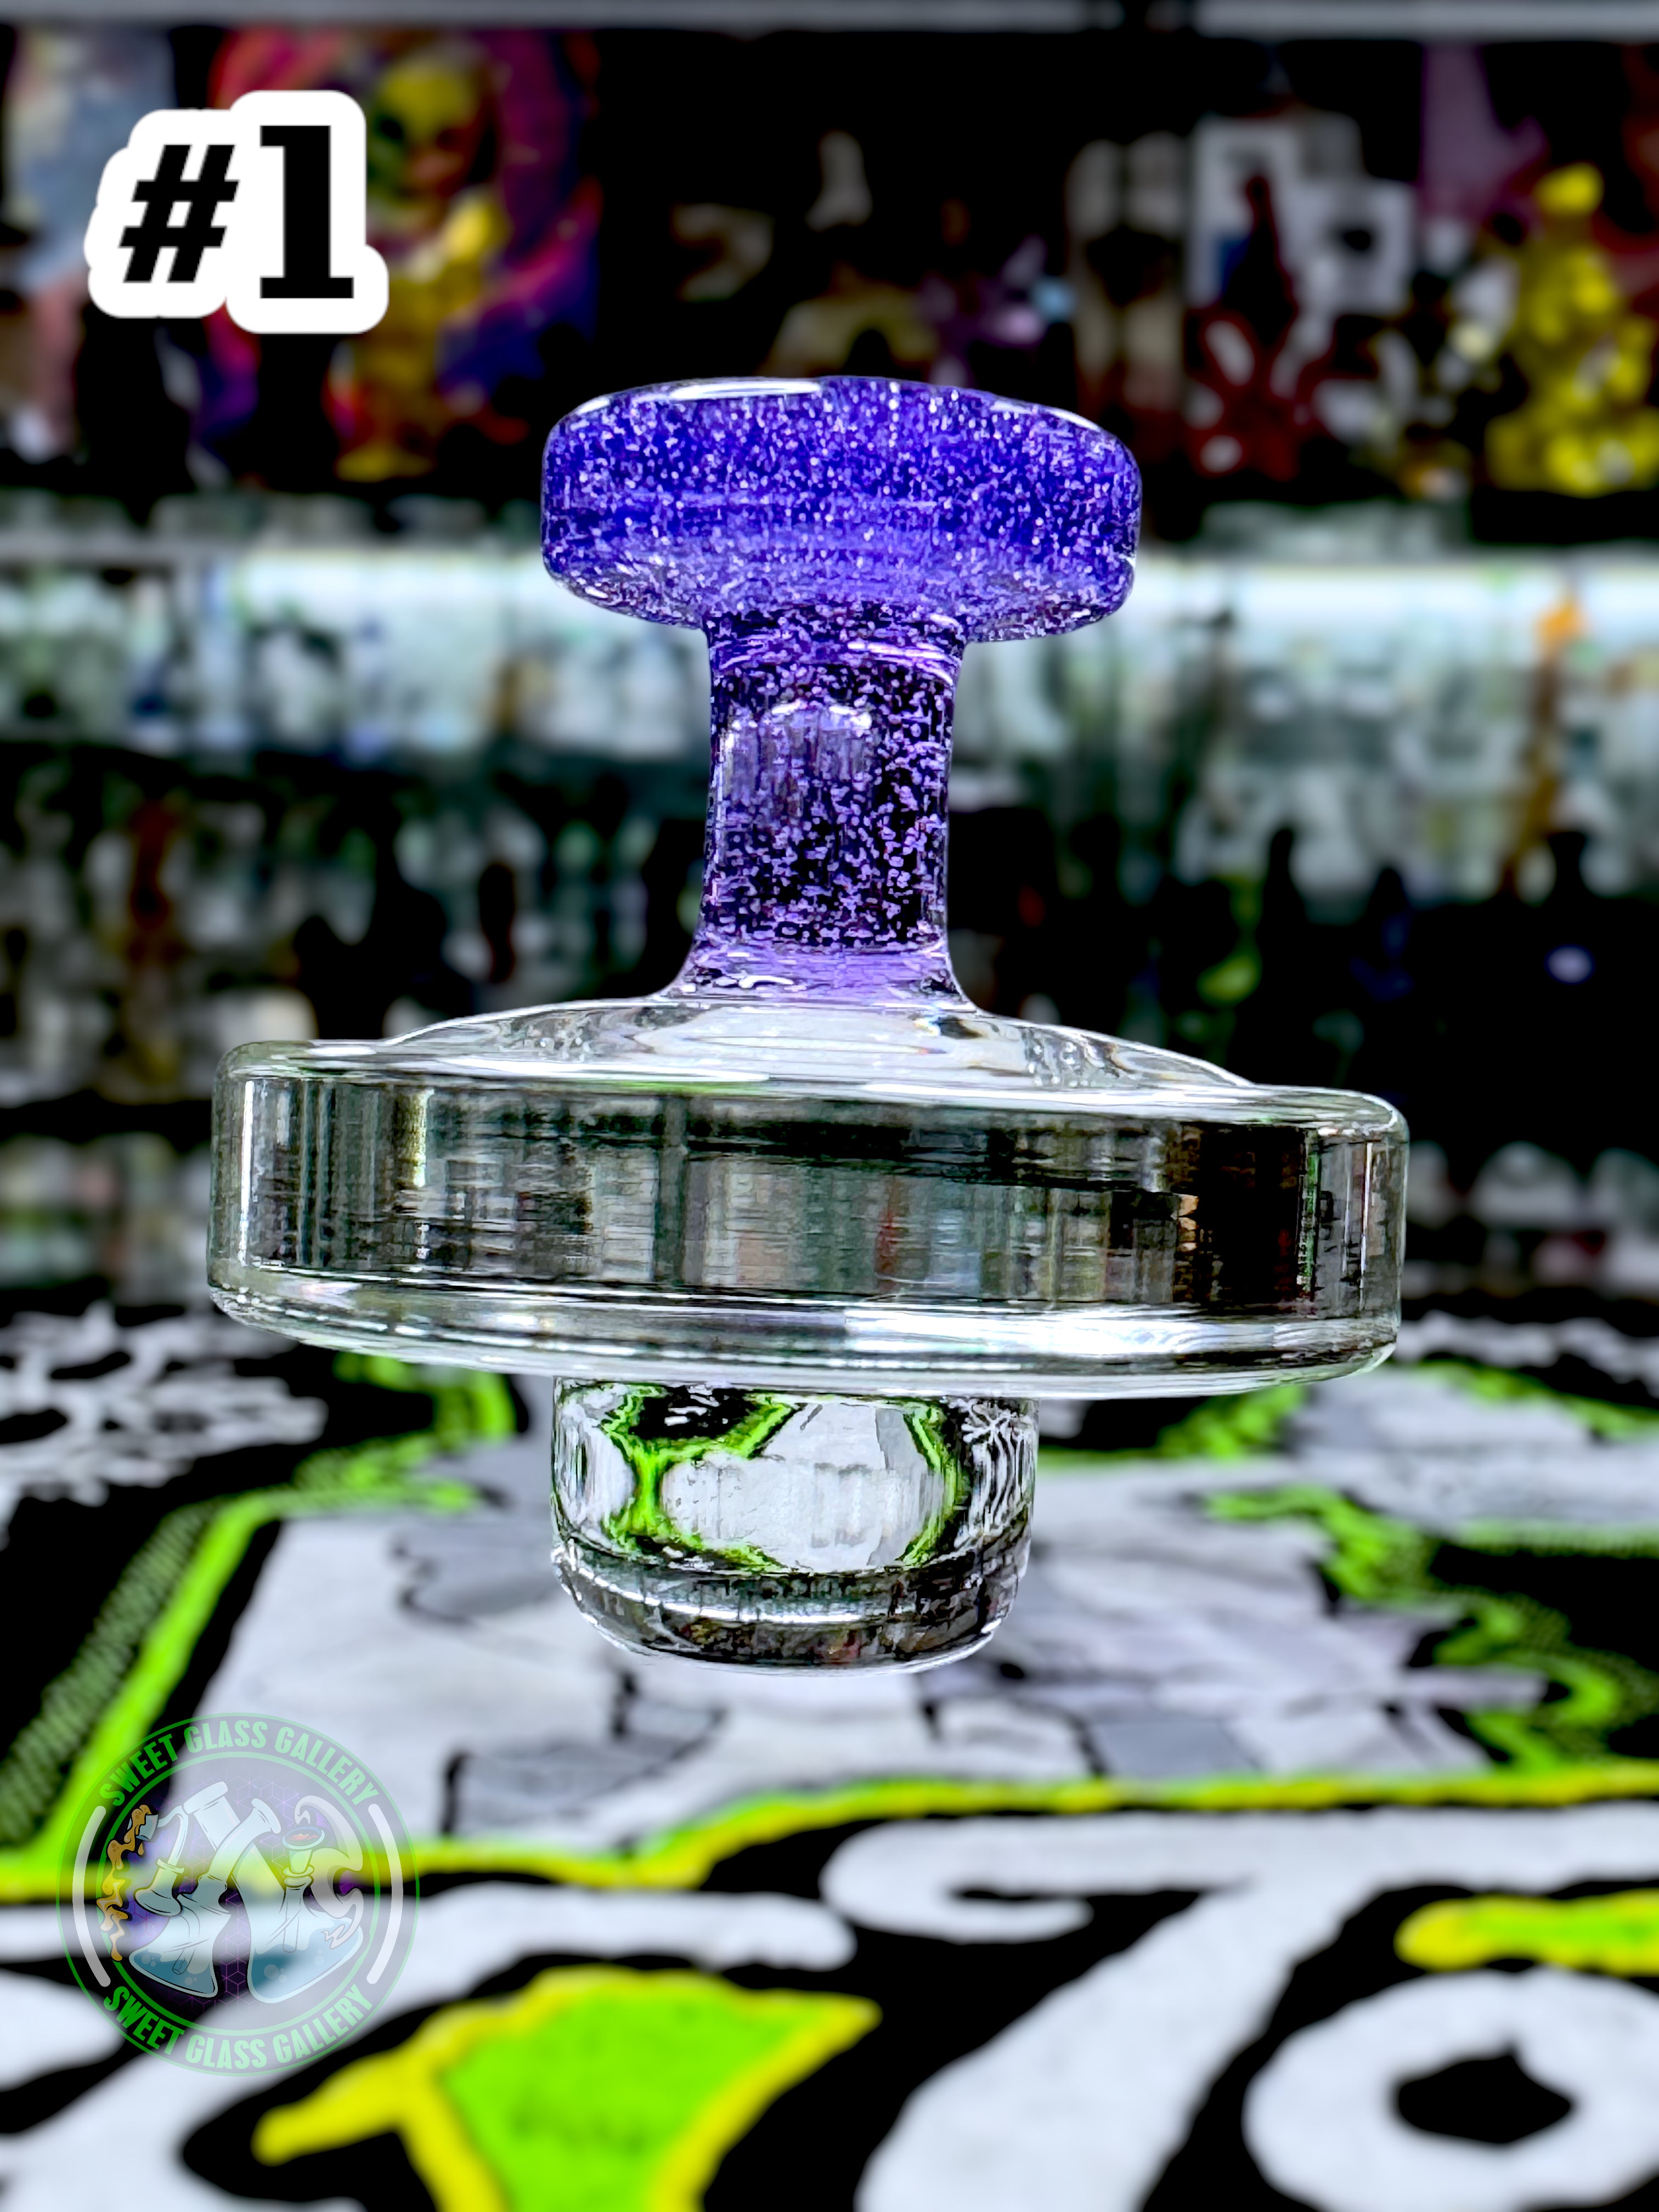 Jong Glass - Slurper Flat Cap (Fits 20mm Slurpers) #1 Purple Lollipop